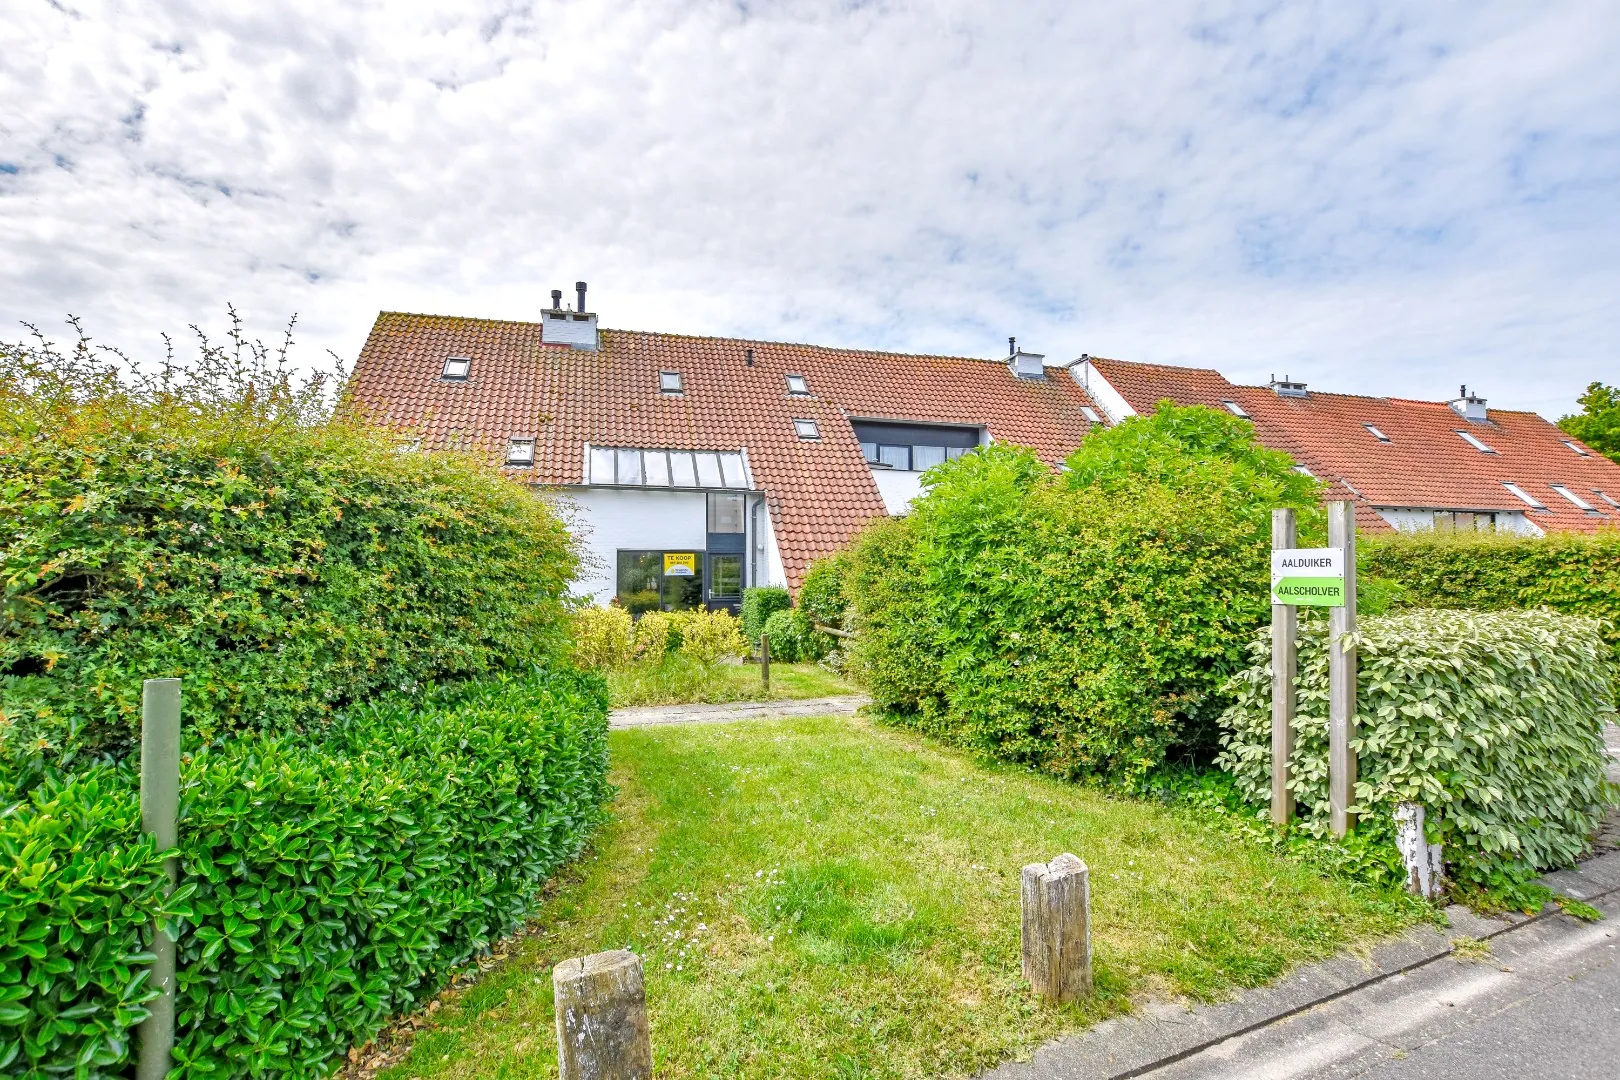 Vakantiewoning te Nieuwpoort-bad met 4 slaapkamers inclusief parking (Ysermonde) - domicilie mogelijk! 